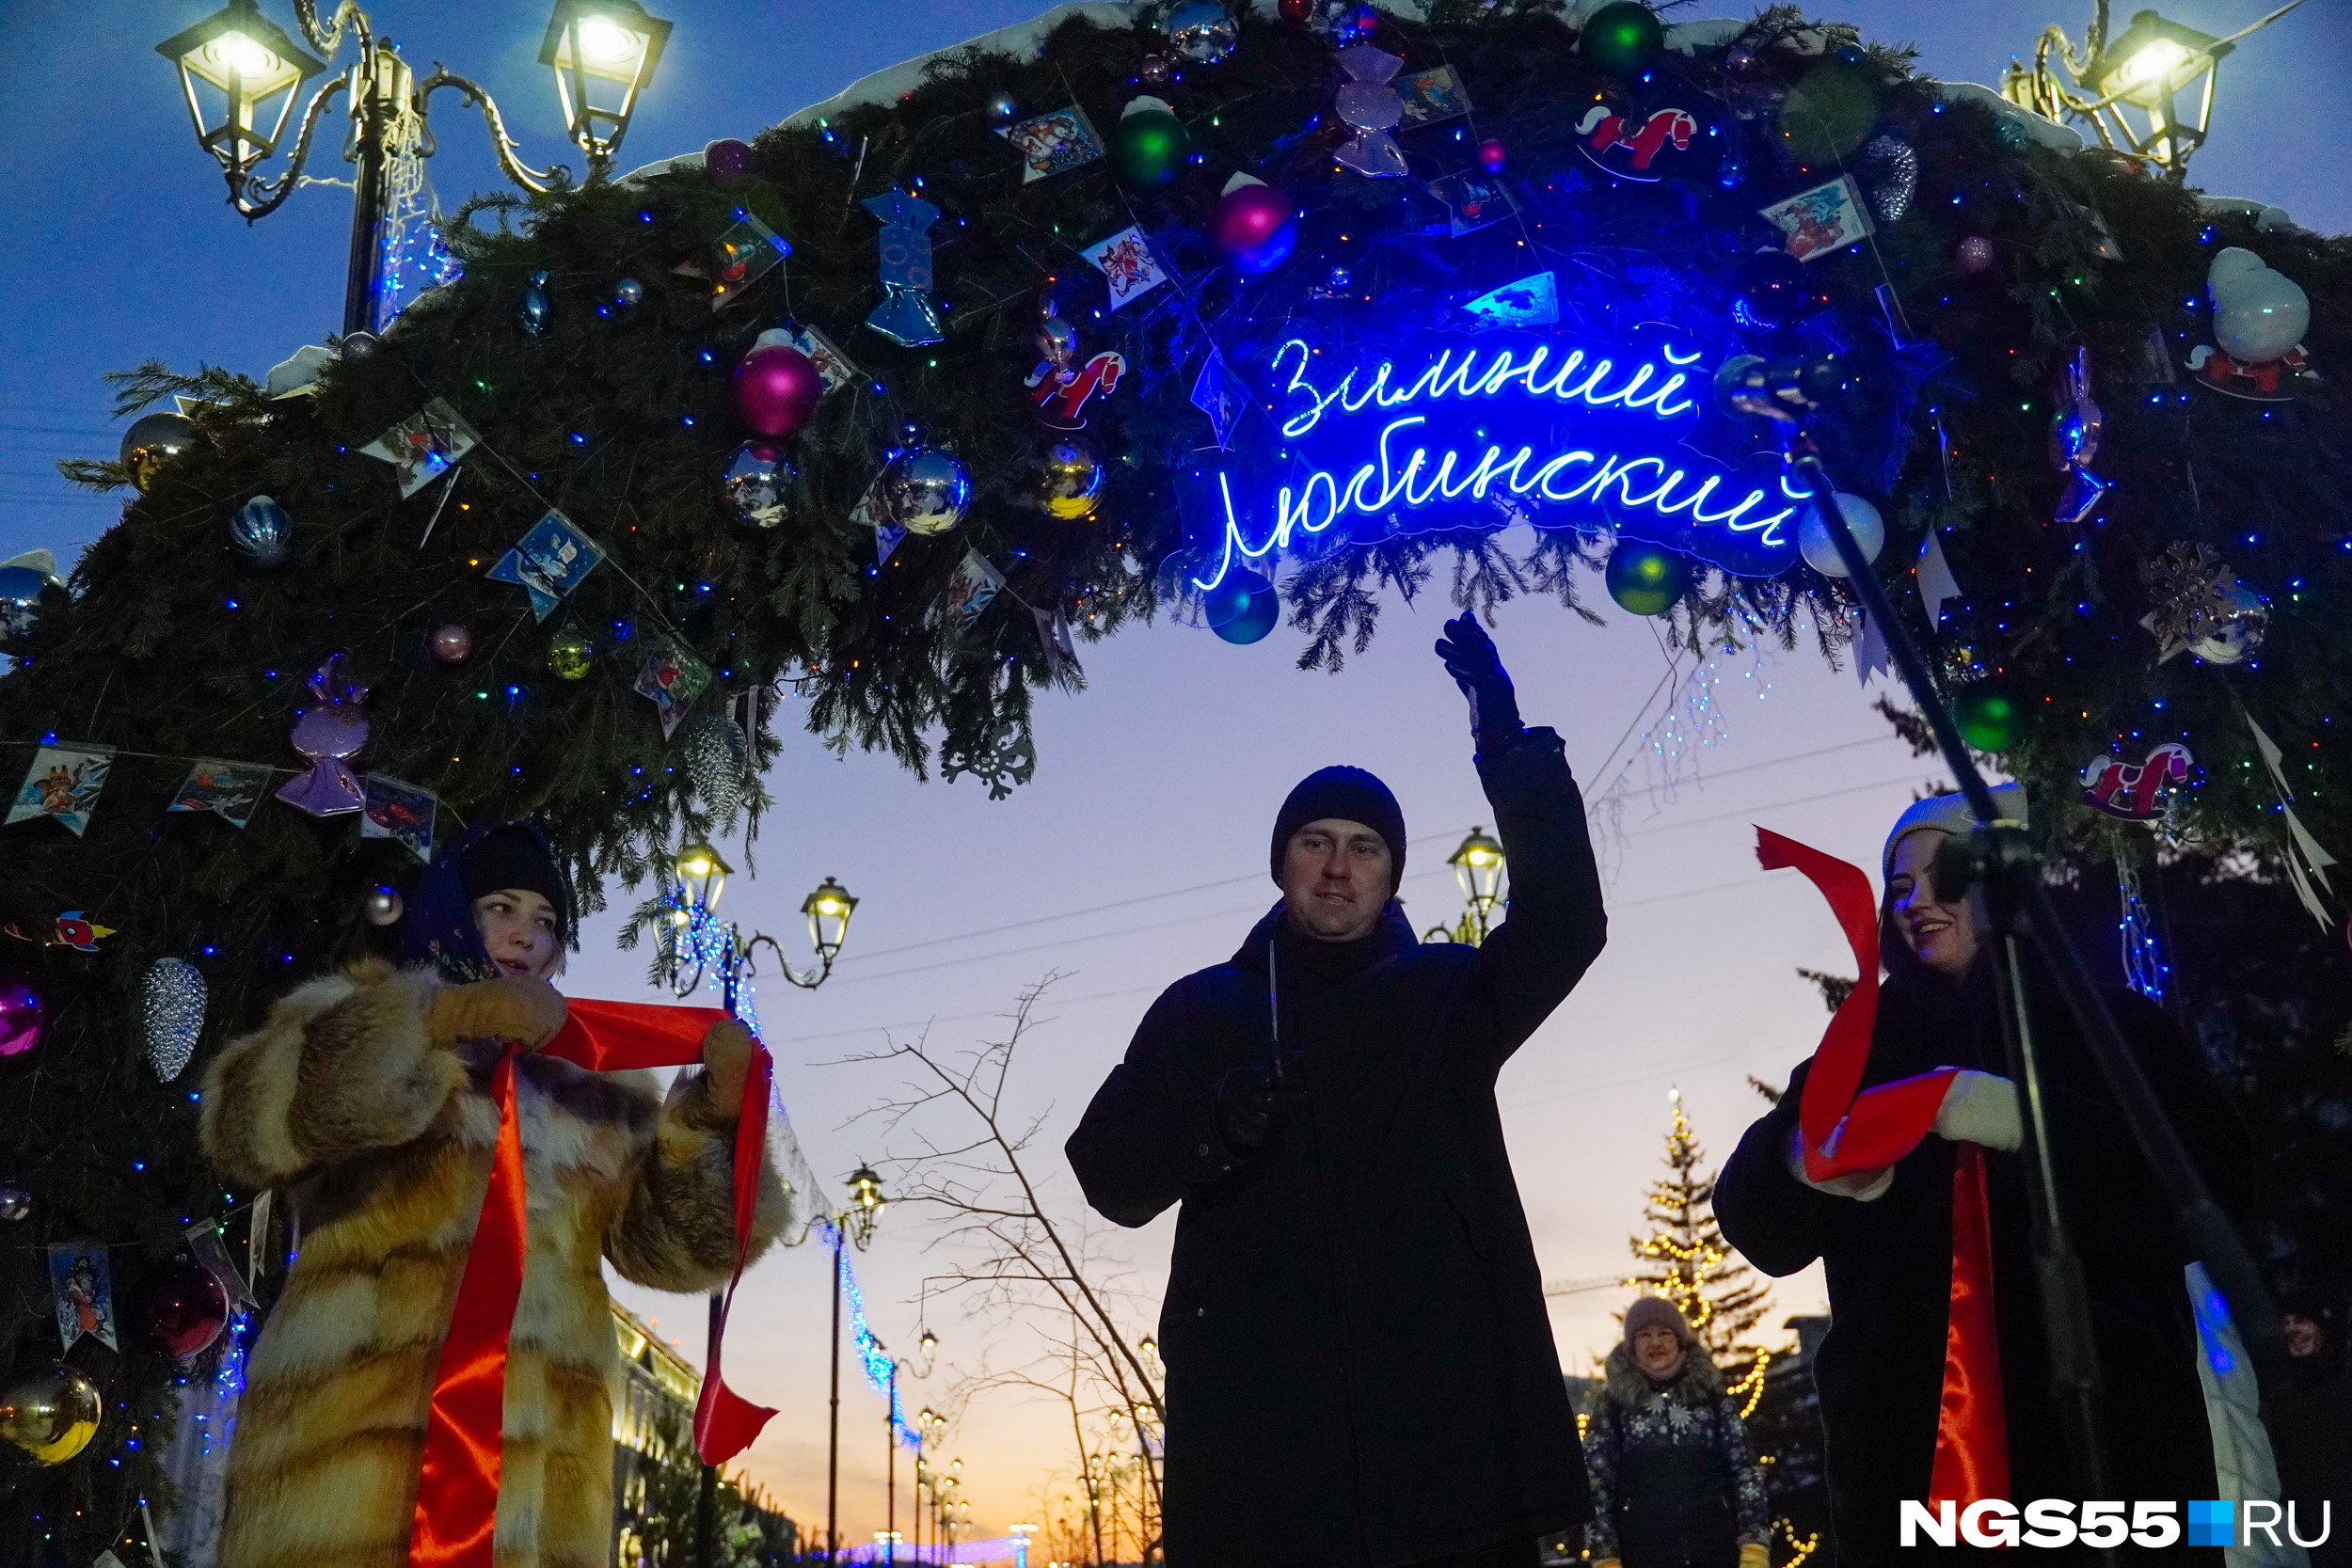 Открытие «Зимнего Любинского» прошло в торжественной обстановке. Для Омска этот проект стал традицией